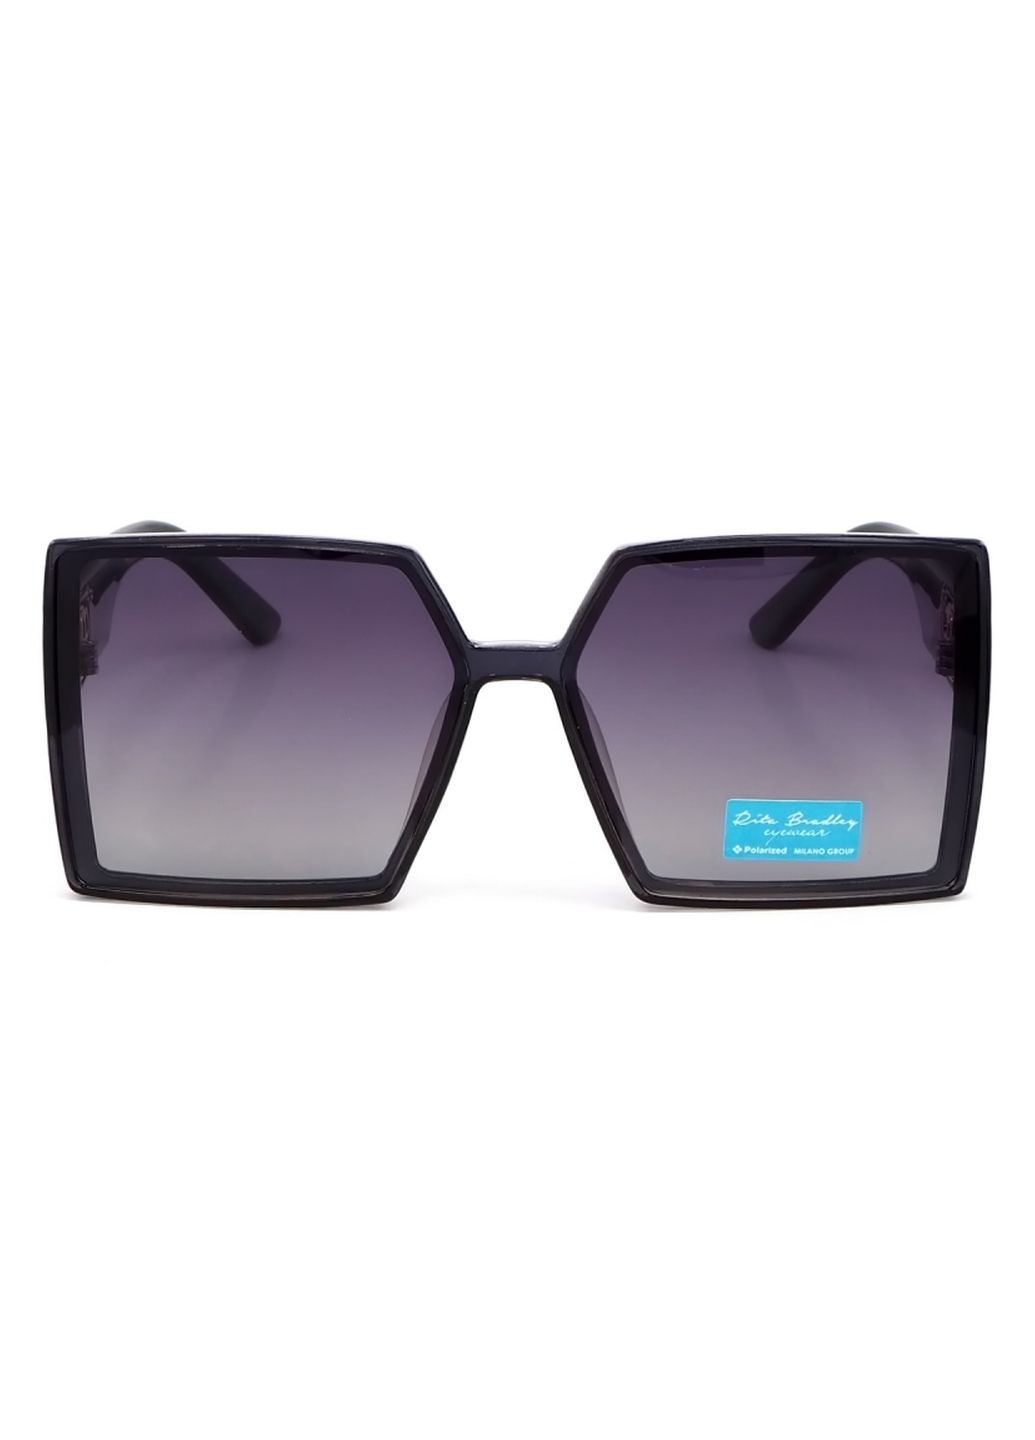 Купить Женские солнцезащитные очки Rita Bradley с поляризацией RB731 112079 в интернет-магазине